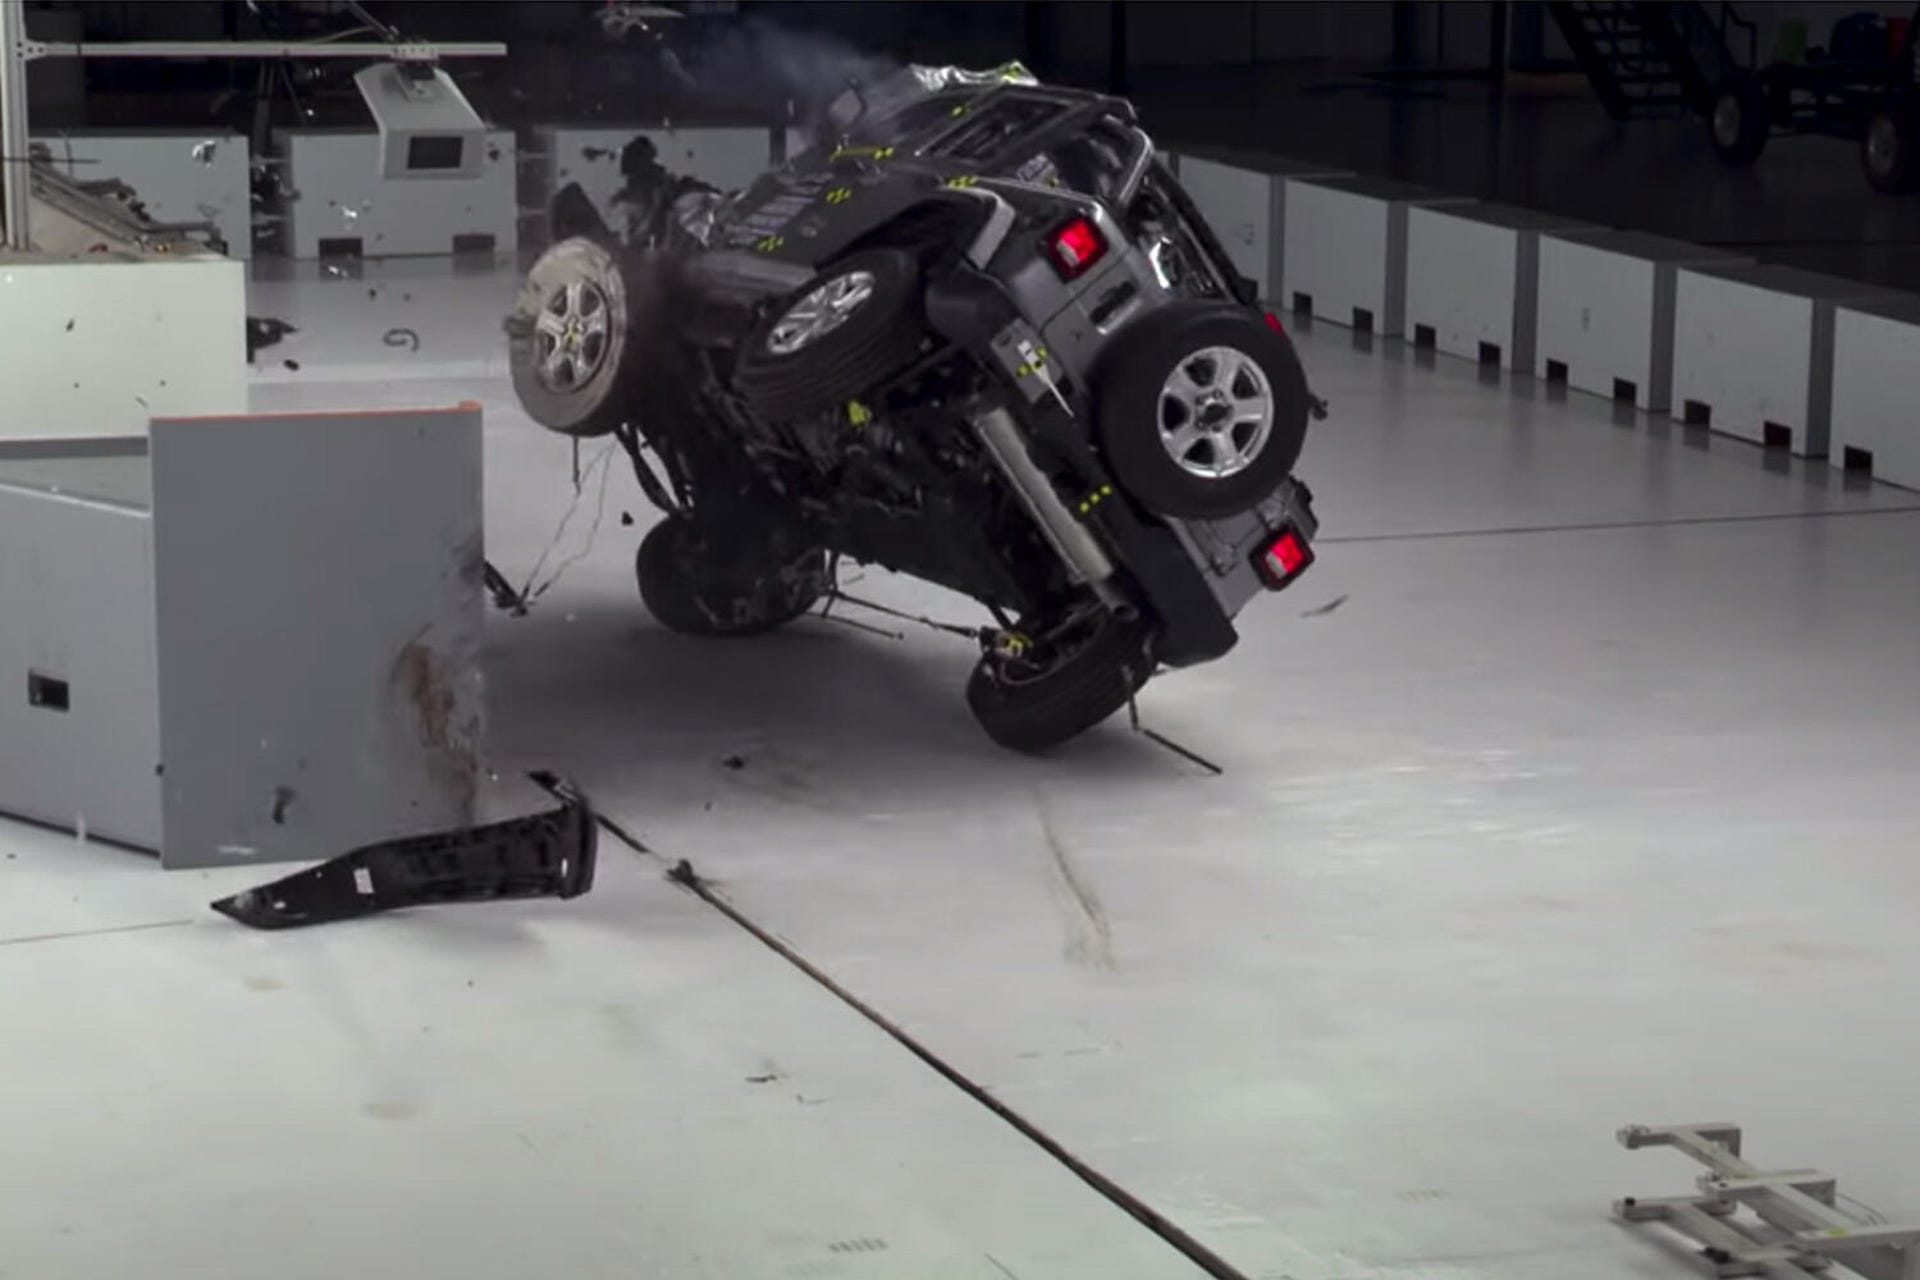 2019 Jeep Wrangler IIHS crash test